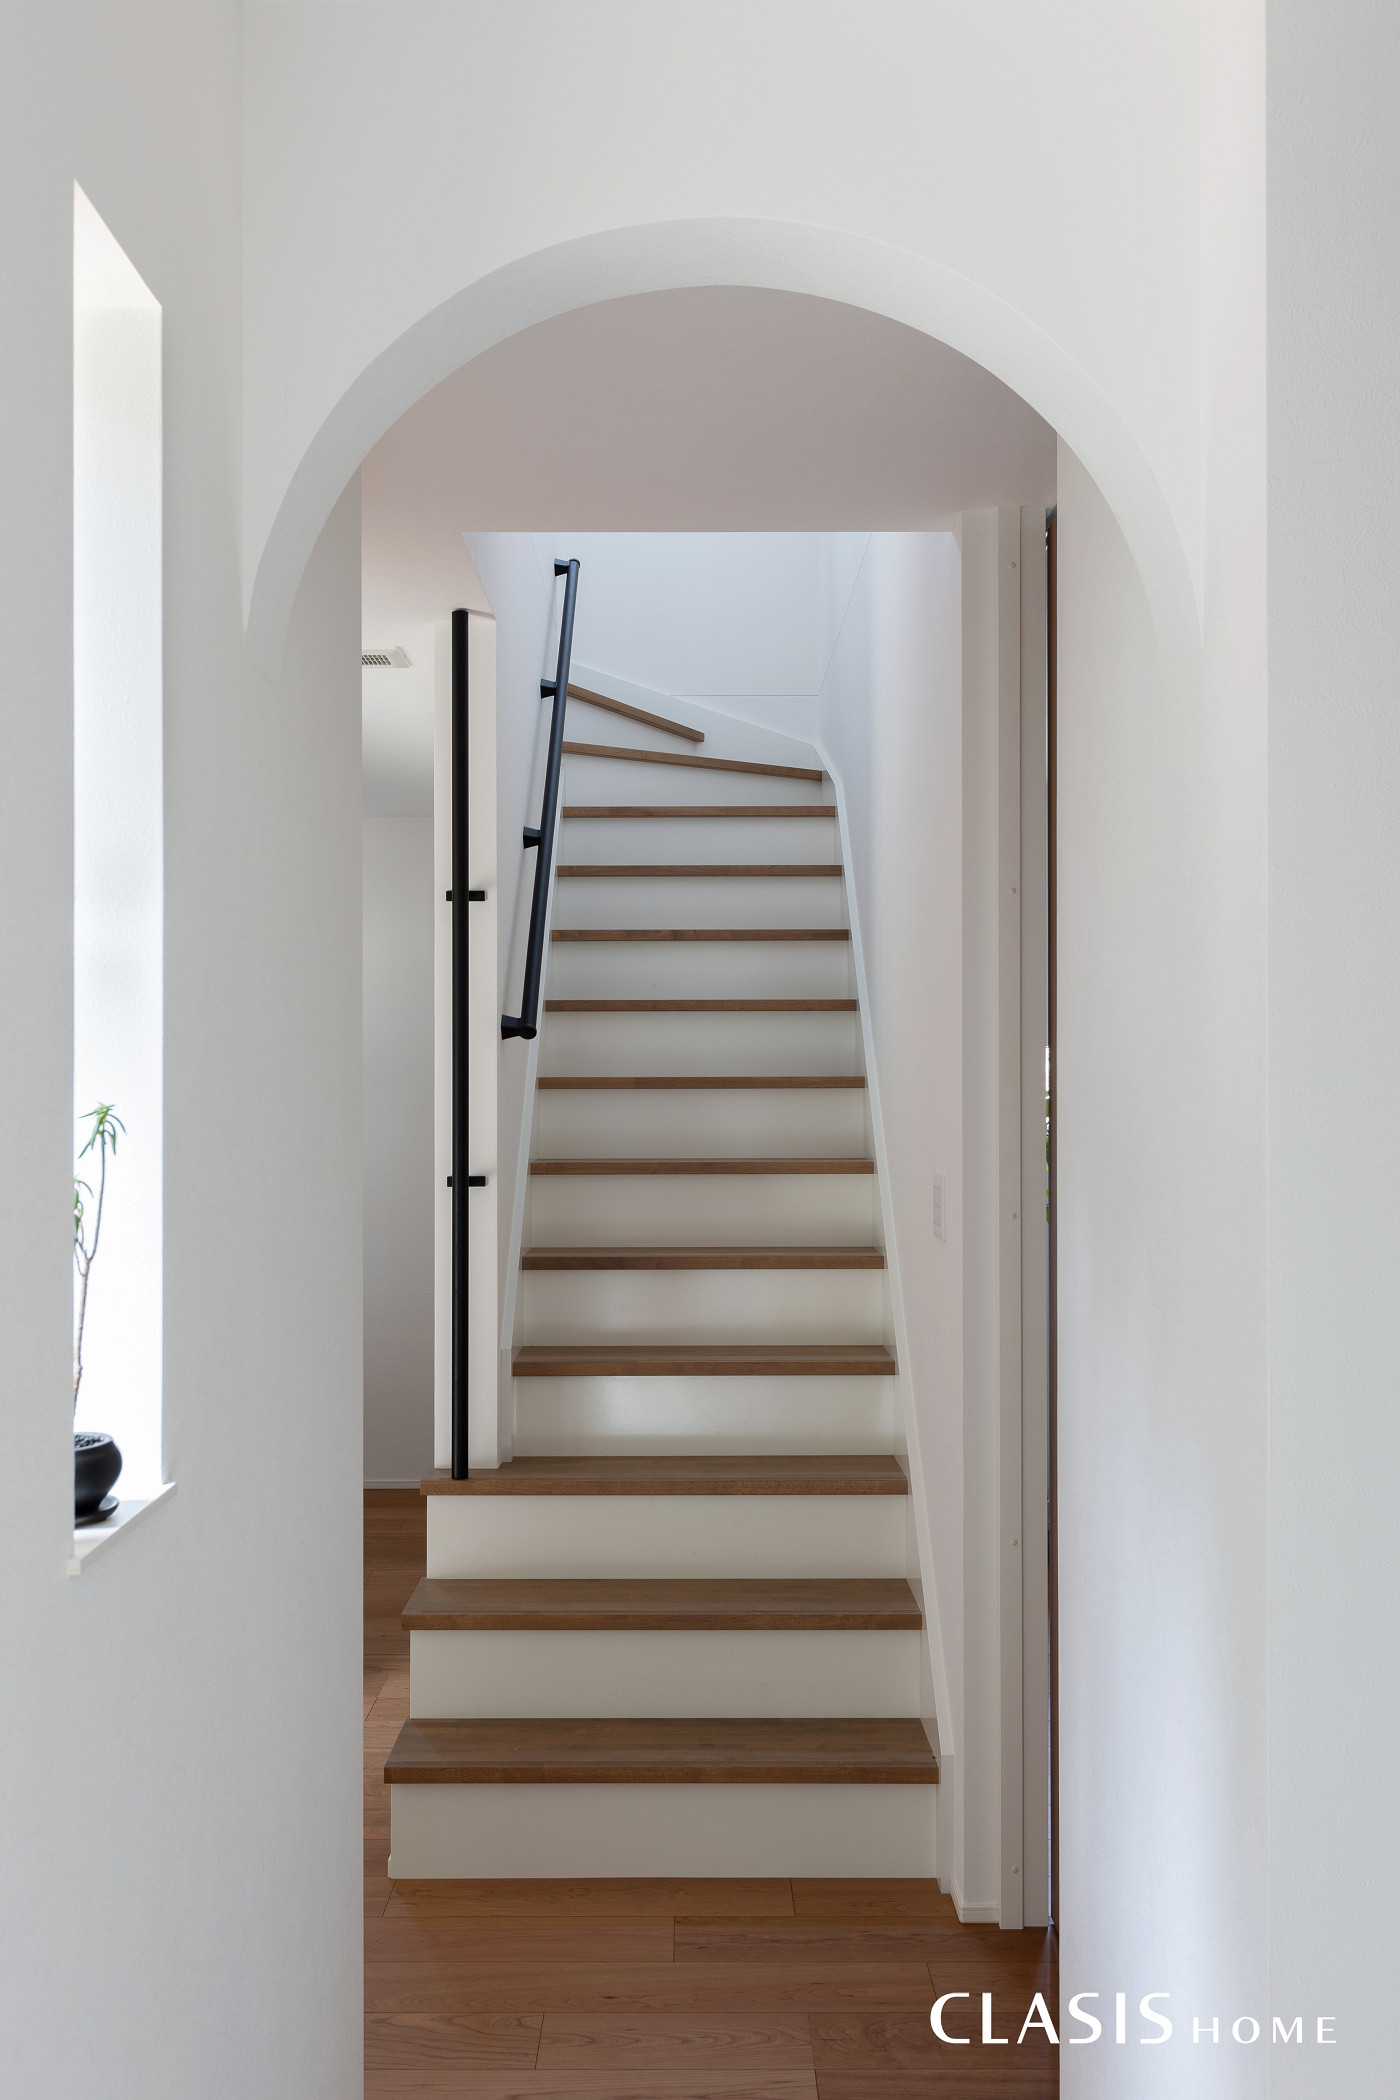 アールの垂れ壁が柔らかく空間を区切り、白の蹴込み板が爽やかな階段。